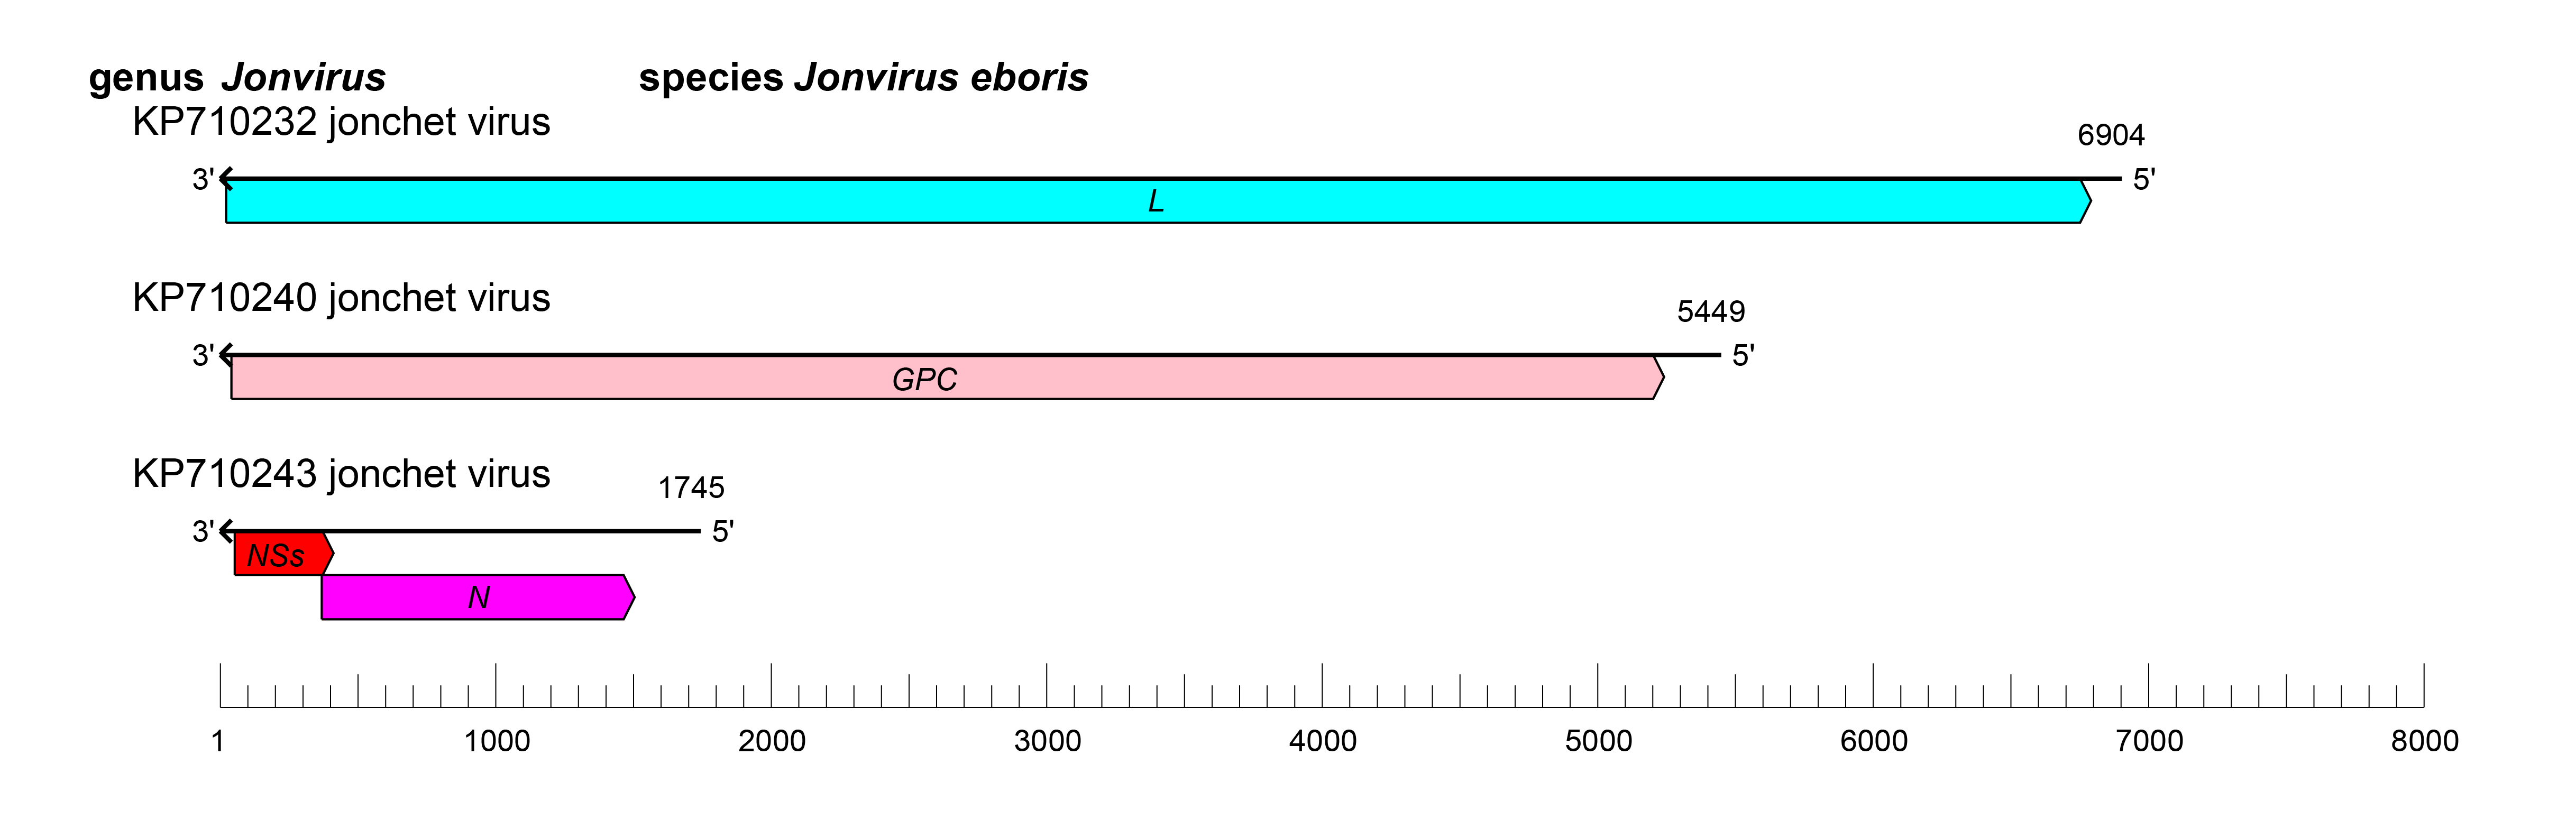 Jonivirus genome